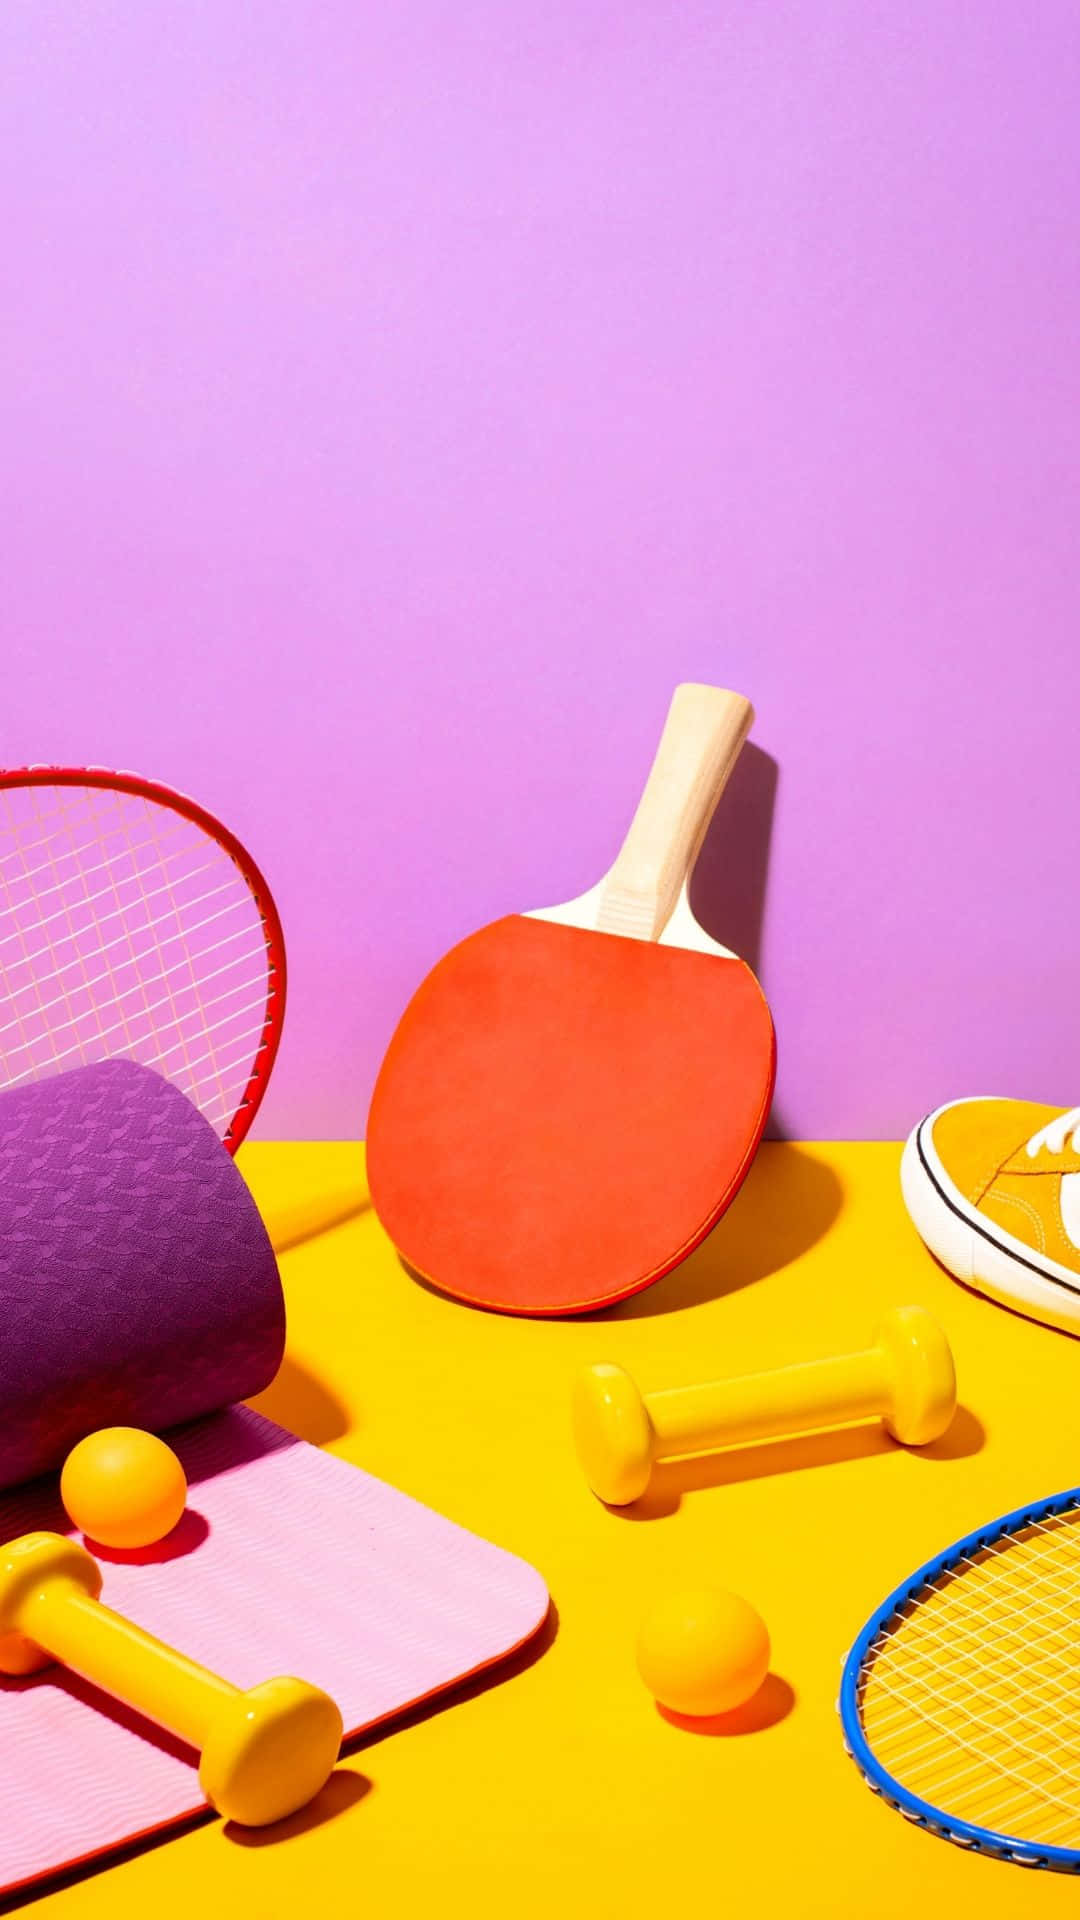 Sfondocon Immagini Di Attrezzature Sportive Per Il Badminton E Il Tennis Da Tavolo.